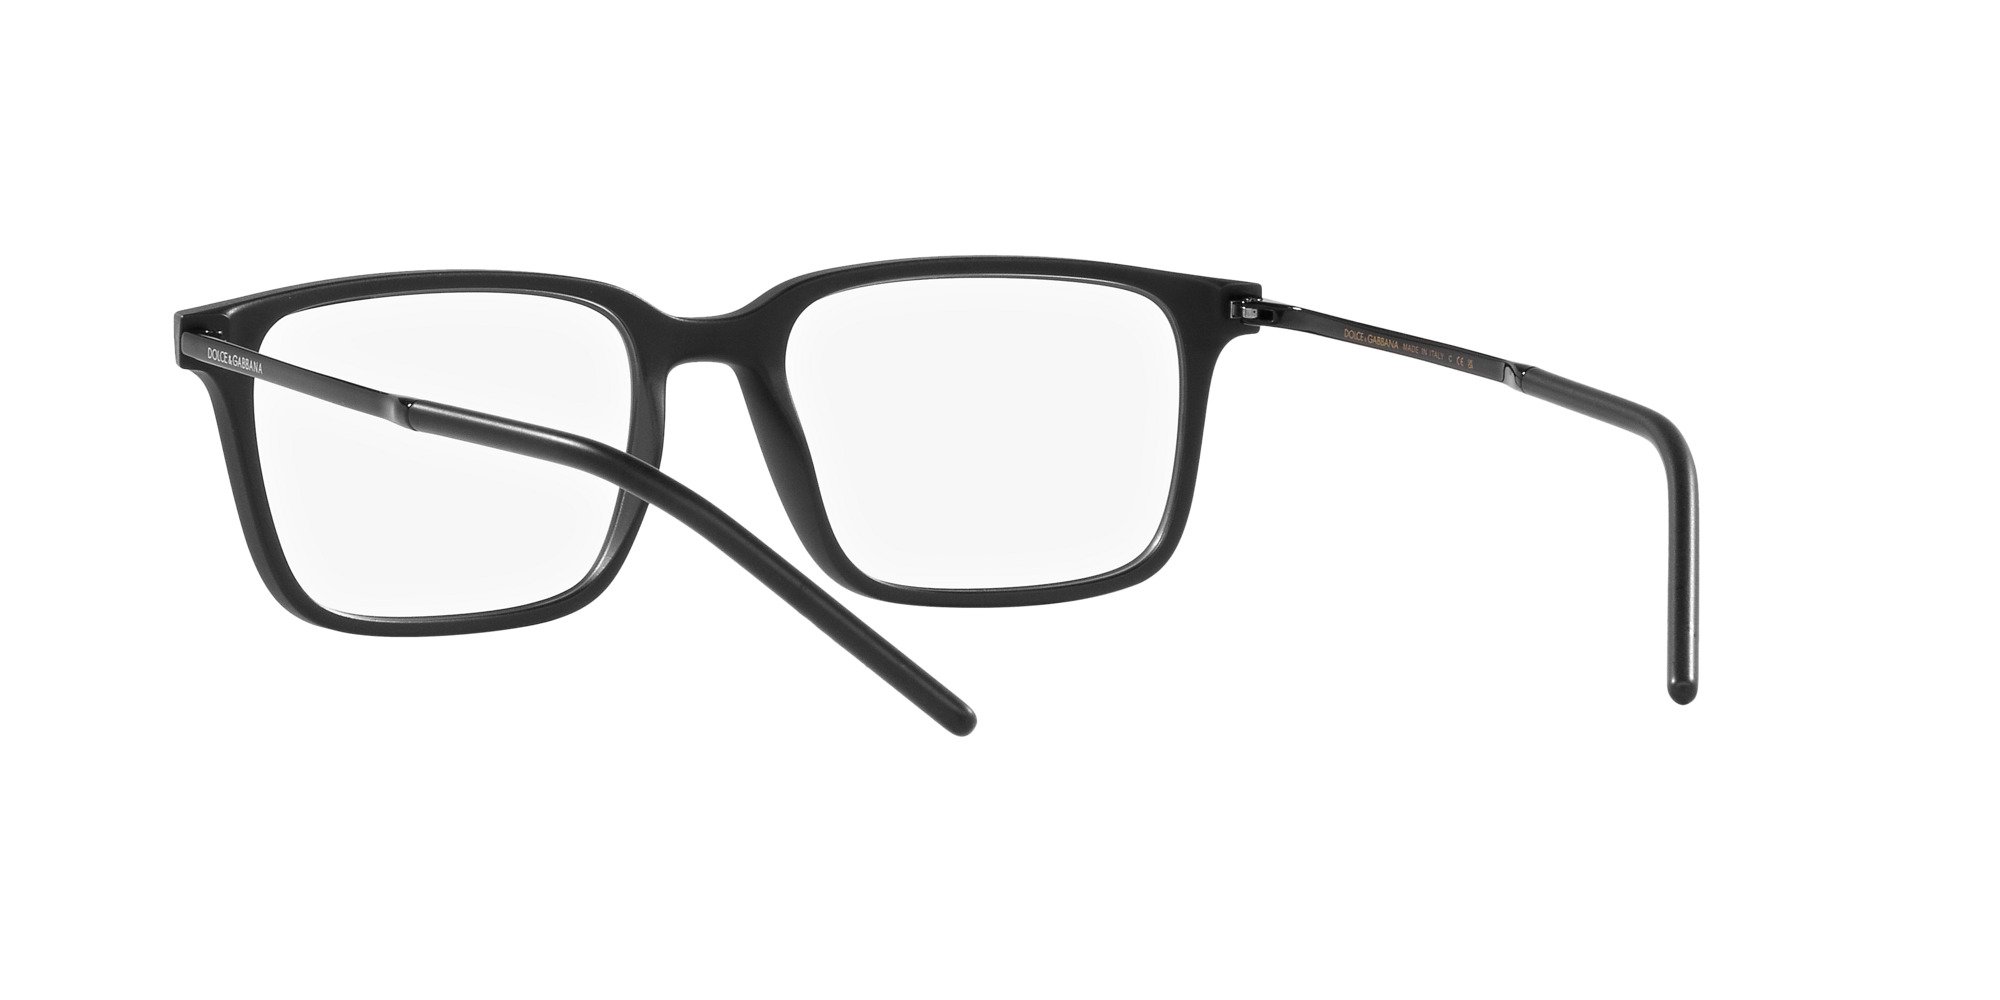 Das Bild zeigt die Korrektionsbrille DG5099 2525 von der Marke D&G in matt schwarz.